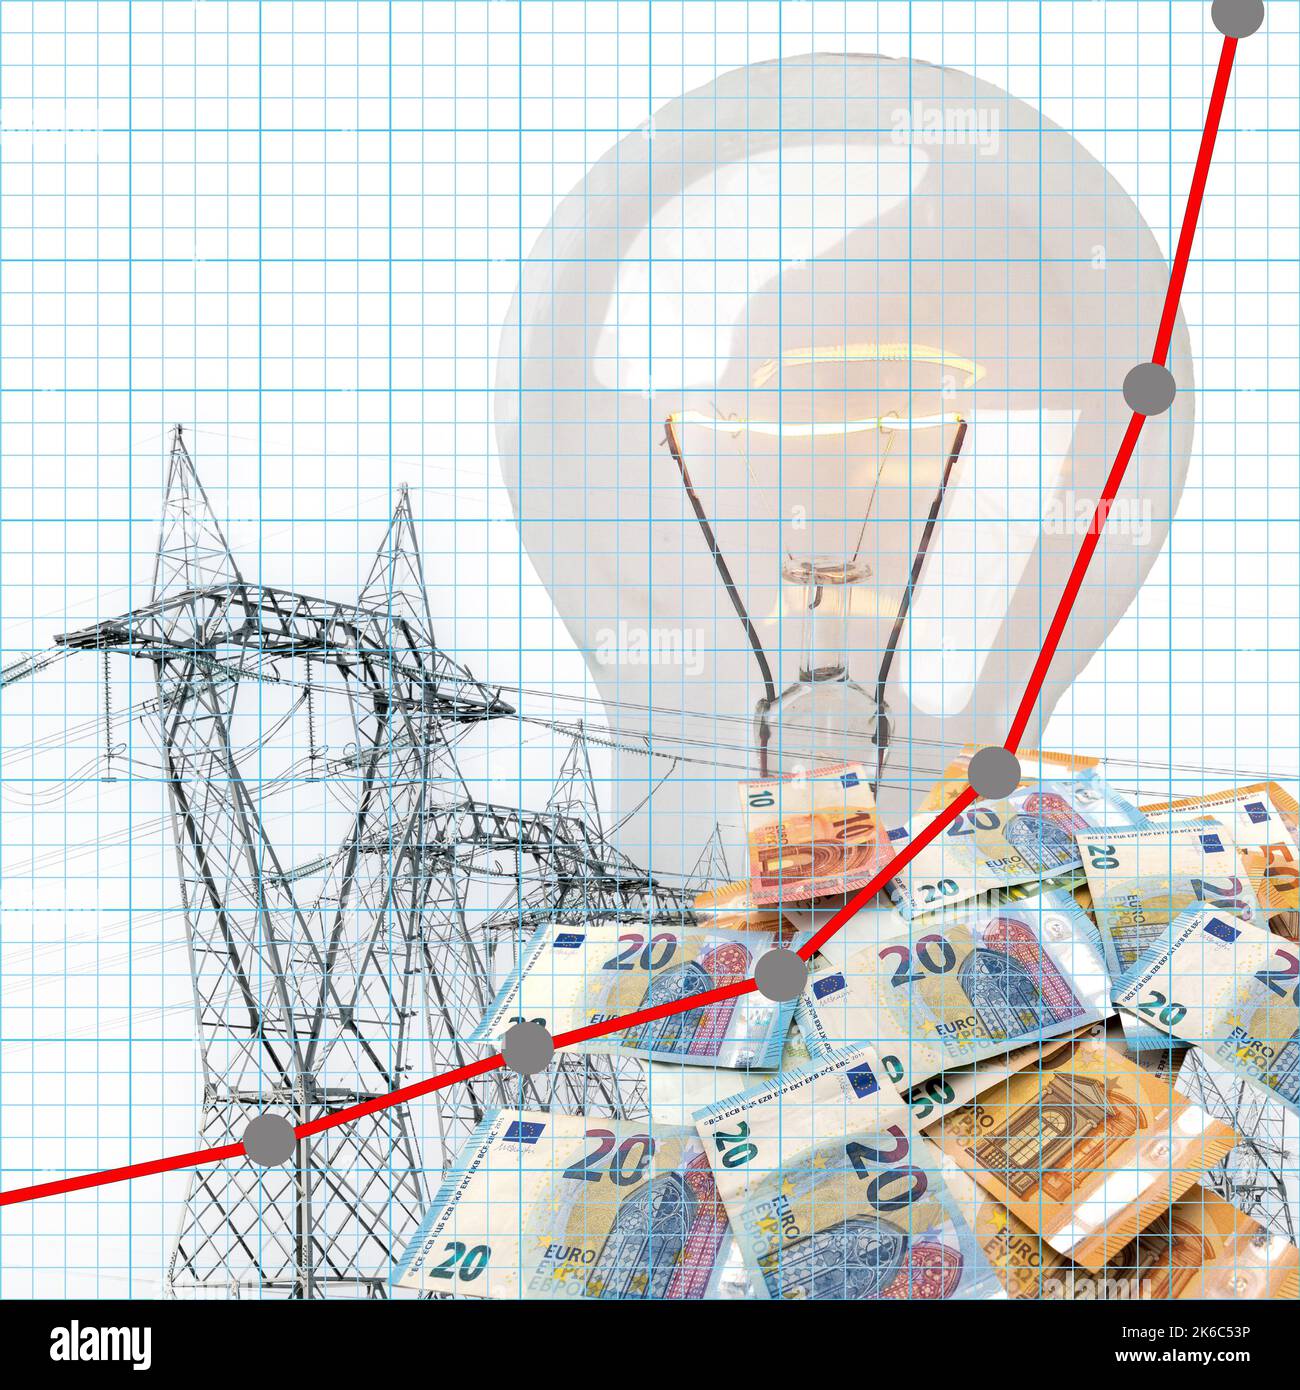 Résumé graphique financier avec prix de l'électricité de ligne en hausse sur les billets en euros, les pylônes d'électricité et les ampoules à incandescence. Concept exponentiel inc Banque D'Images